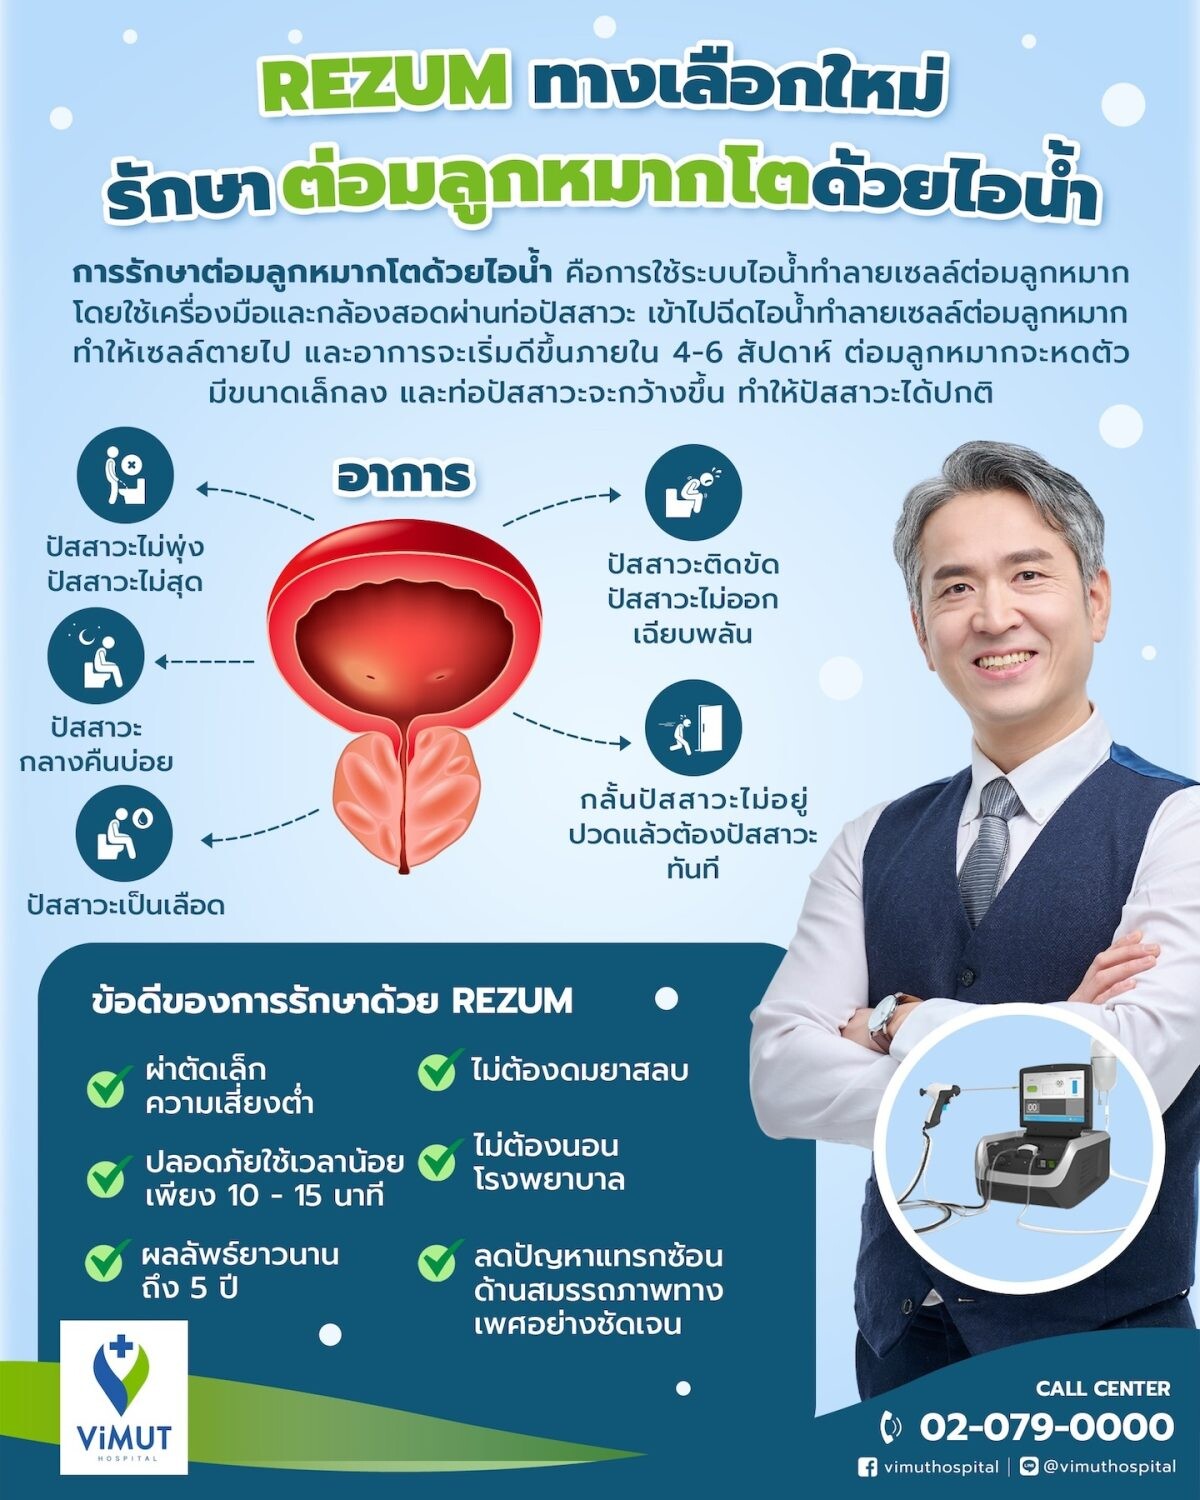 ชายไทยเฮ! รพ.วิมุต เปิดตัวเทคโนโลยีใหม่ 'รักษาต่อมลูกหมากโตด้วยไอน้ำ' ปลอดภัย-หายไว-ไม่ต้องนอนโรงพยาบาล ชี้ชายไทยวัยเก๋า 80% เป็น 'ต่อมลูกหมากโต'